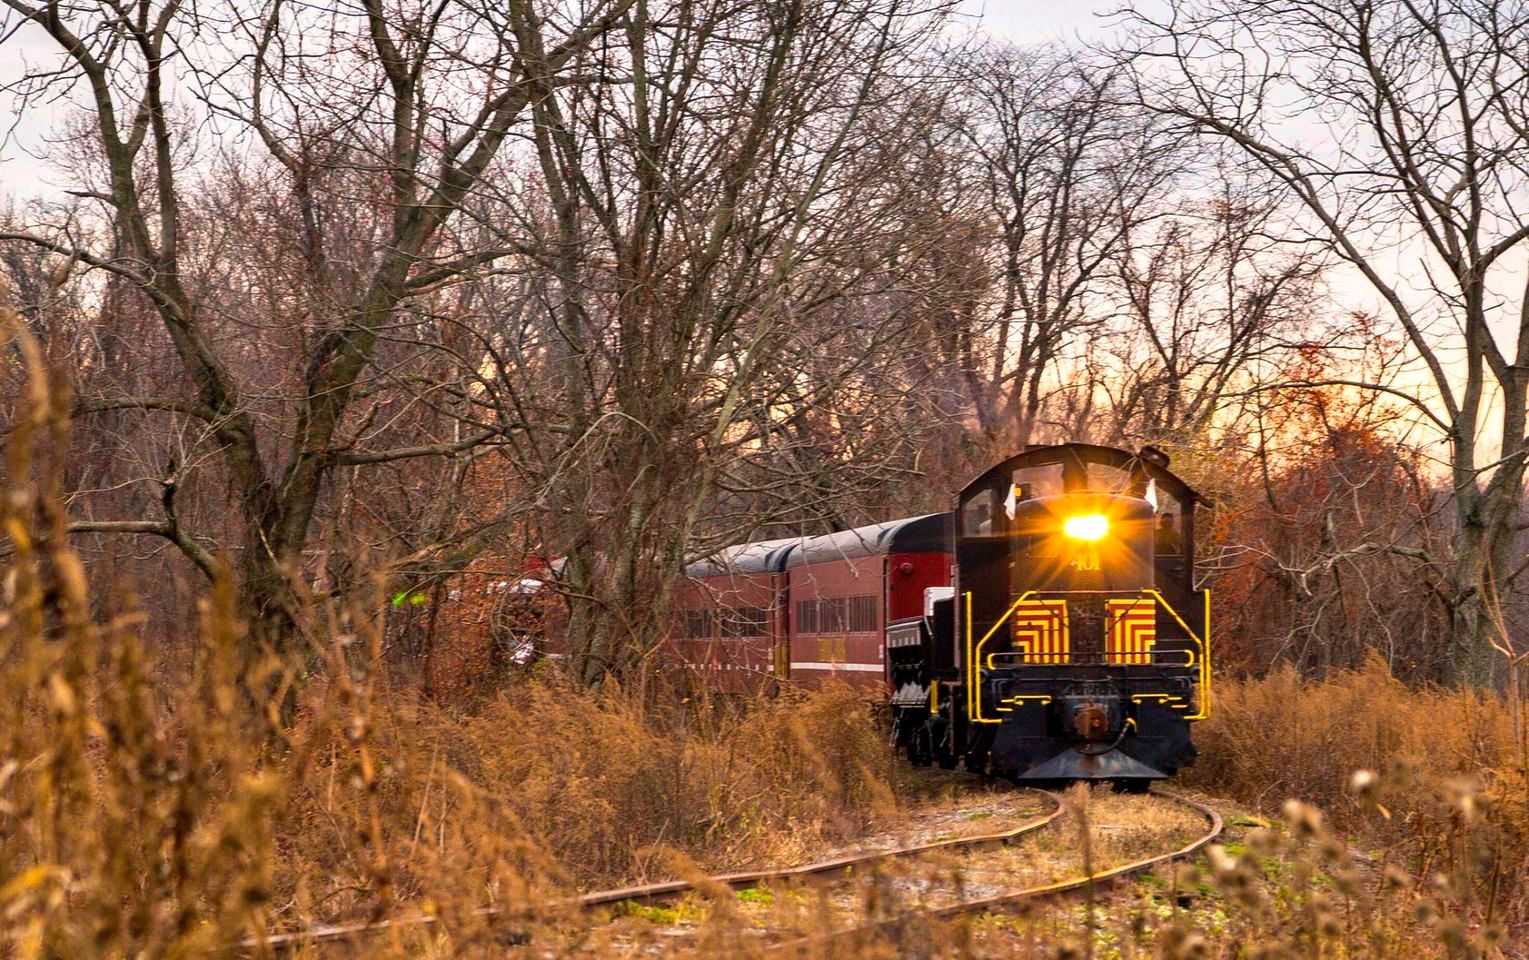 Catskill Mountain Railroad Co. for colorful fall scenes